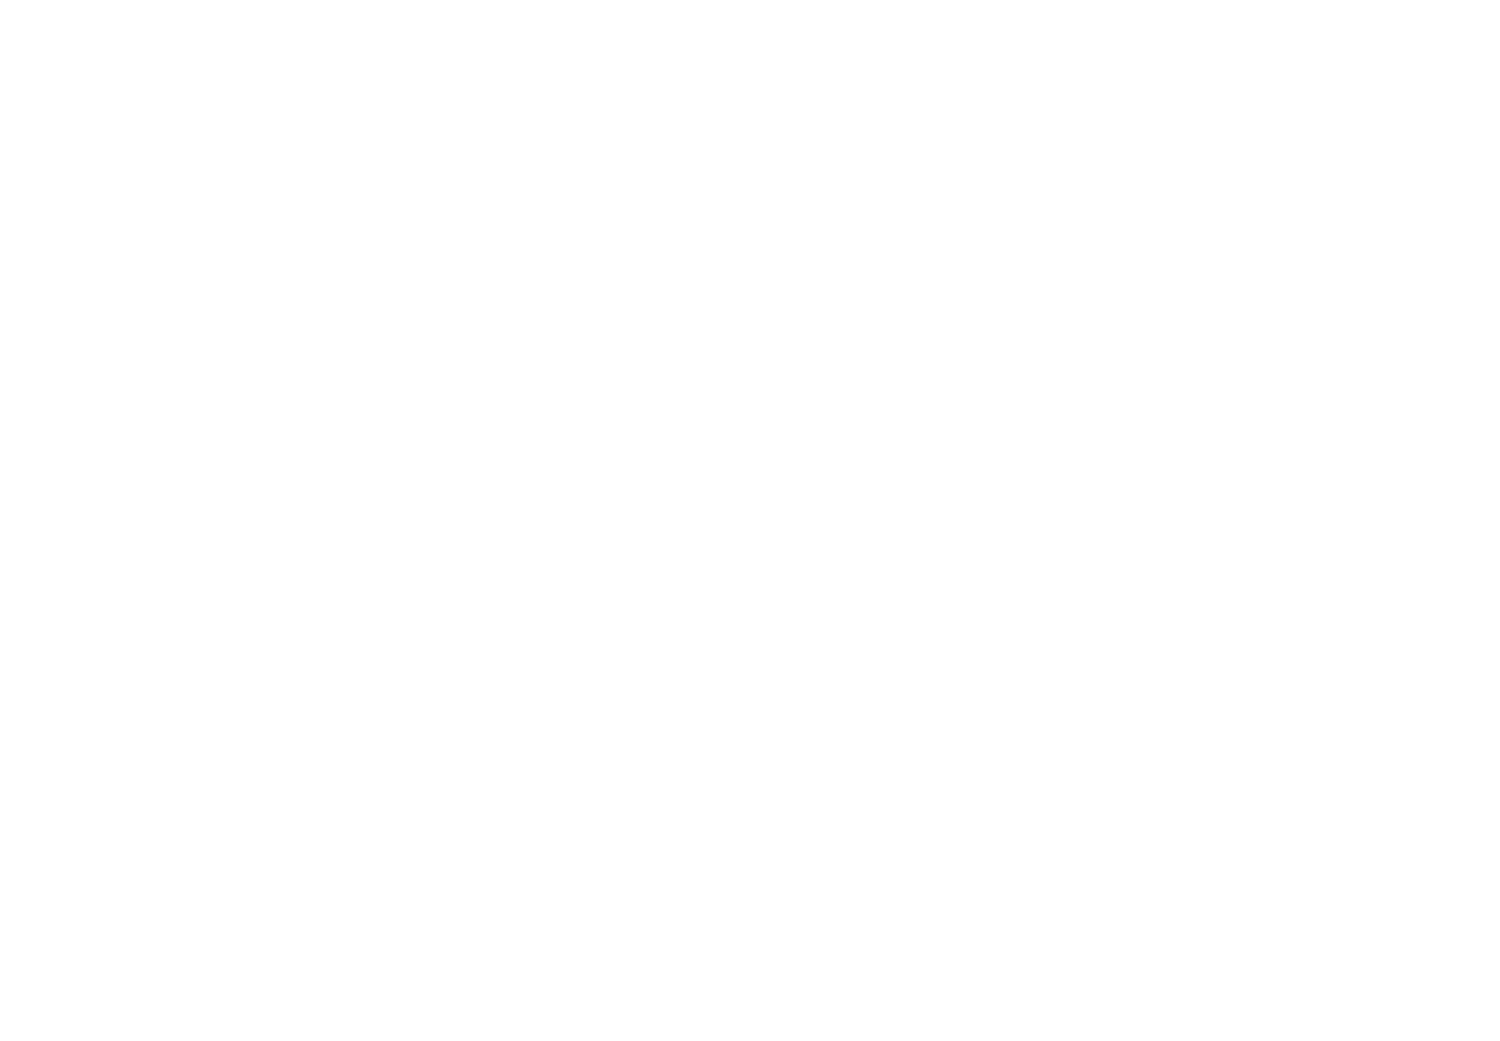 Chop Shop Neighborhood Butchery